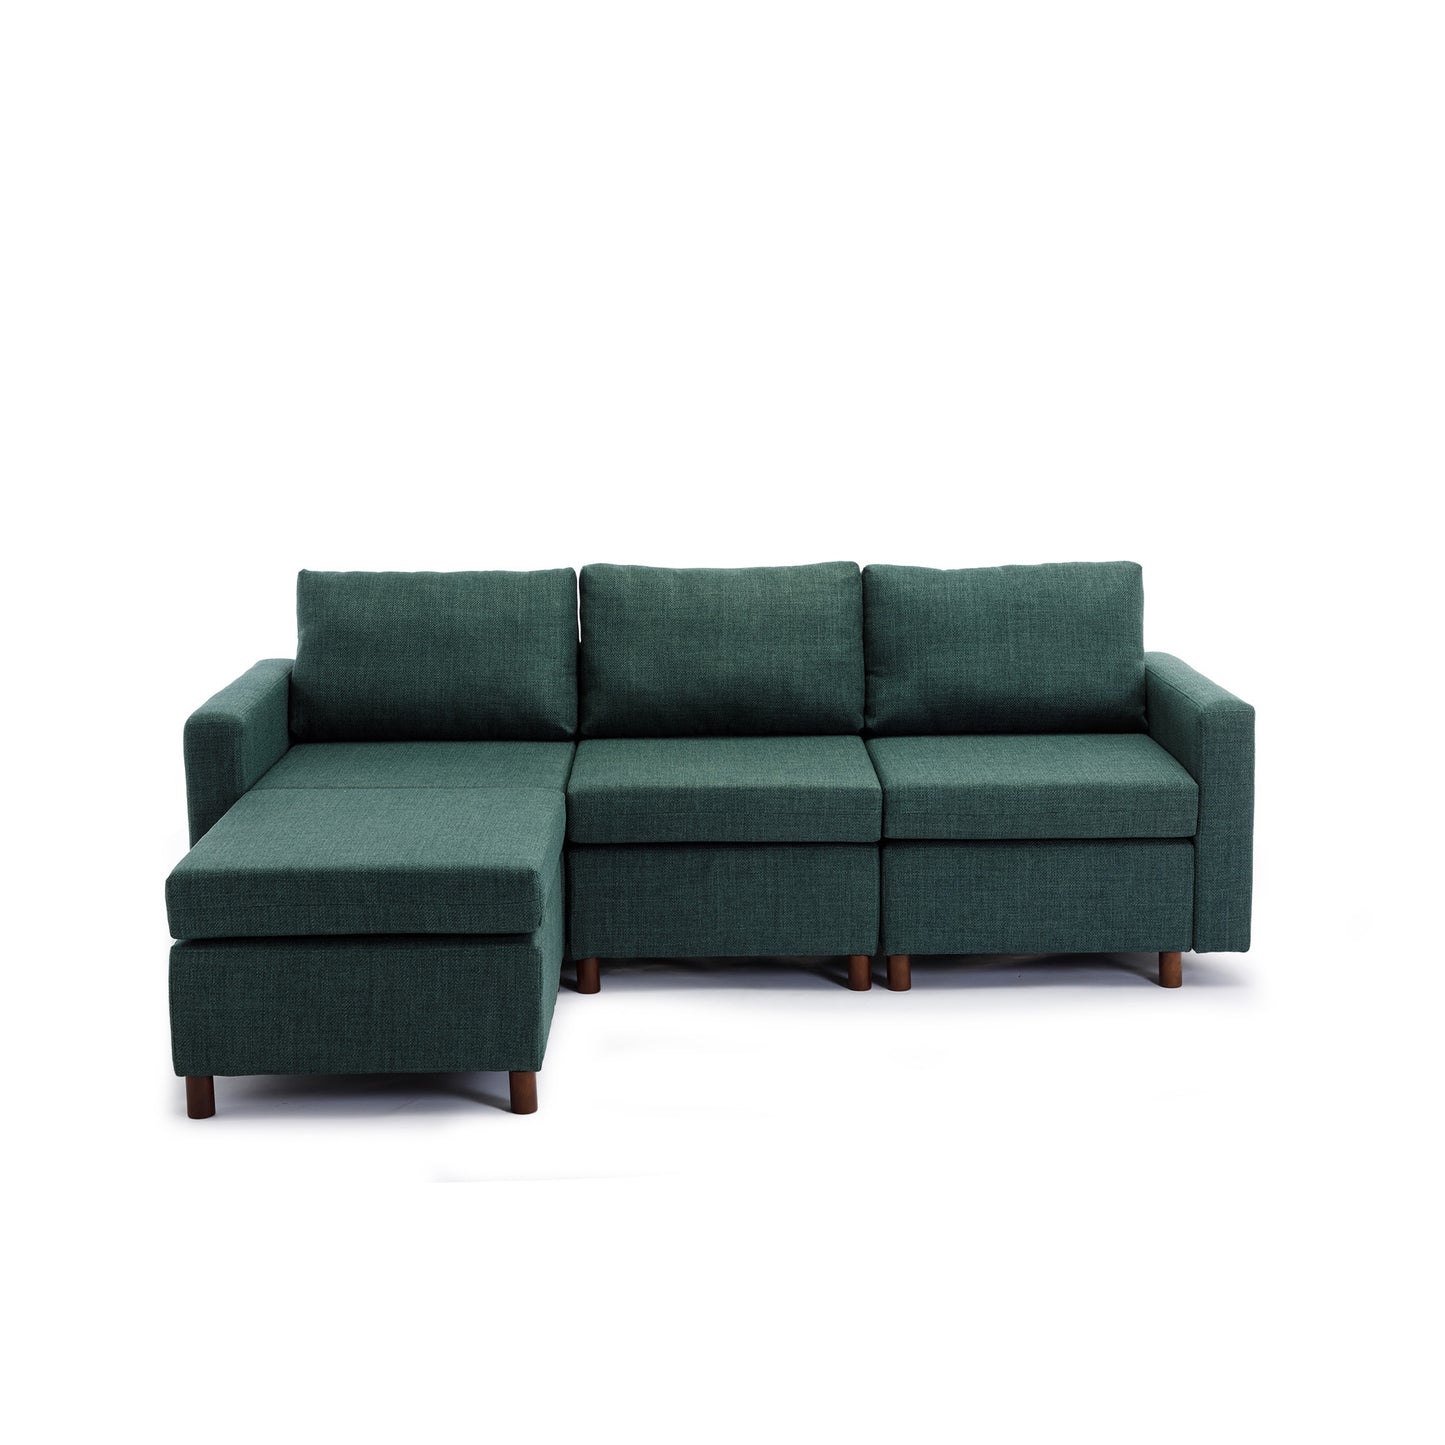 3 Seat Module Sectional Sofa in Green w/ Ottoman